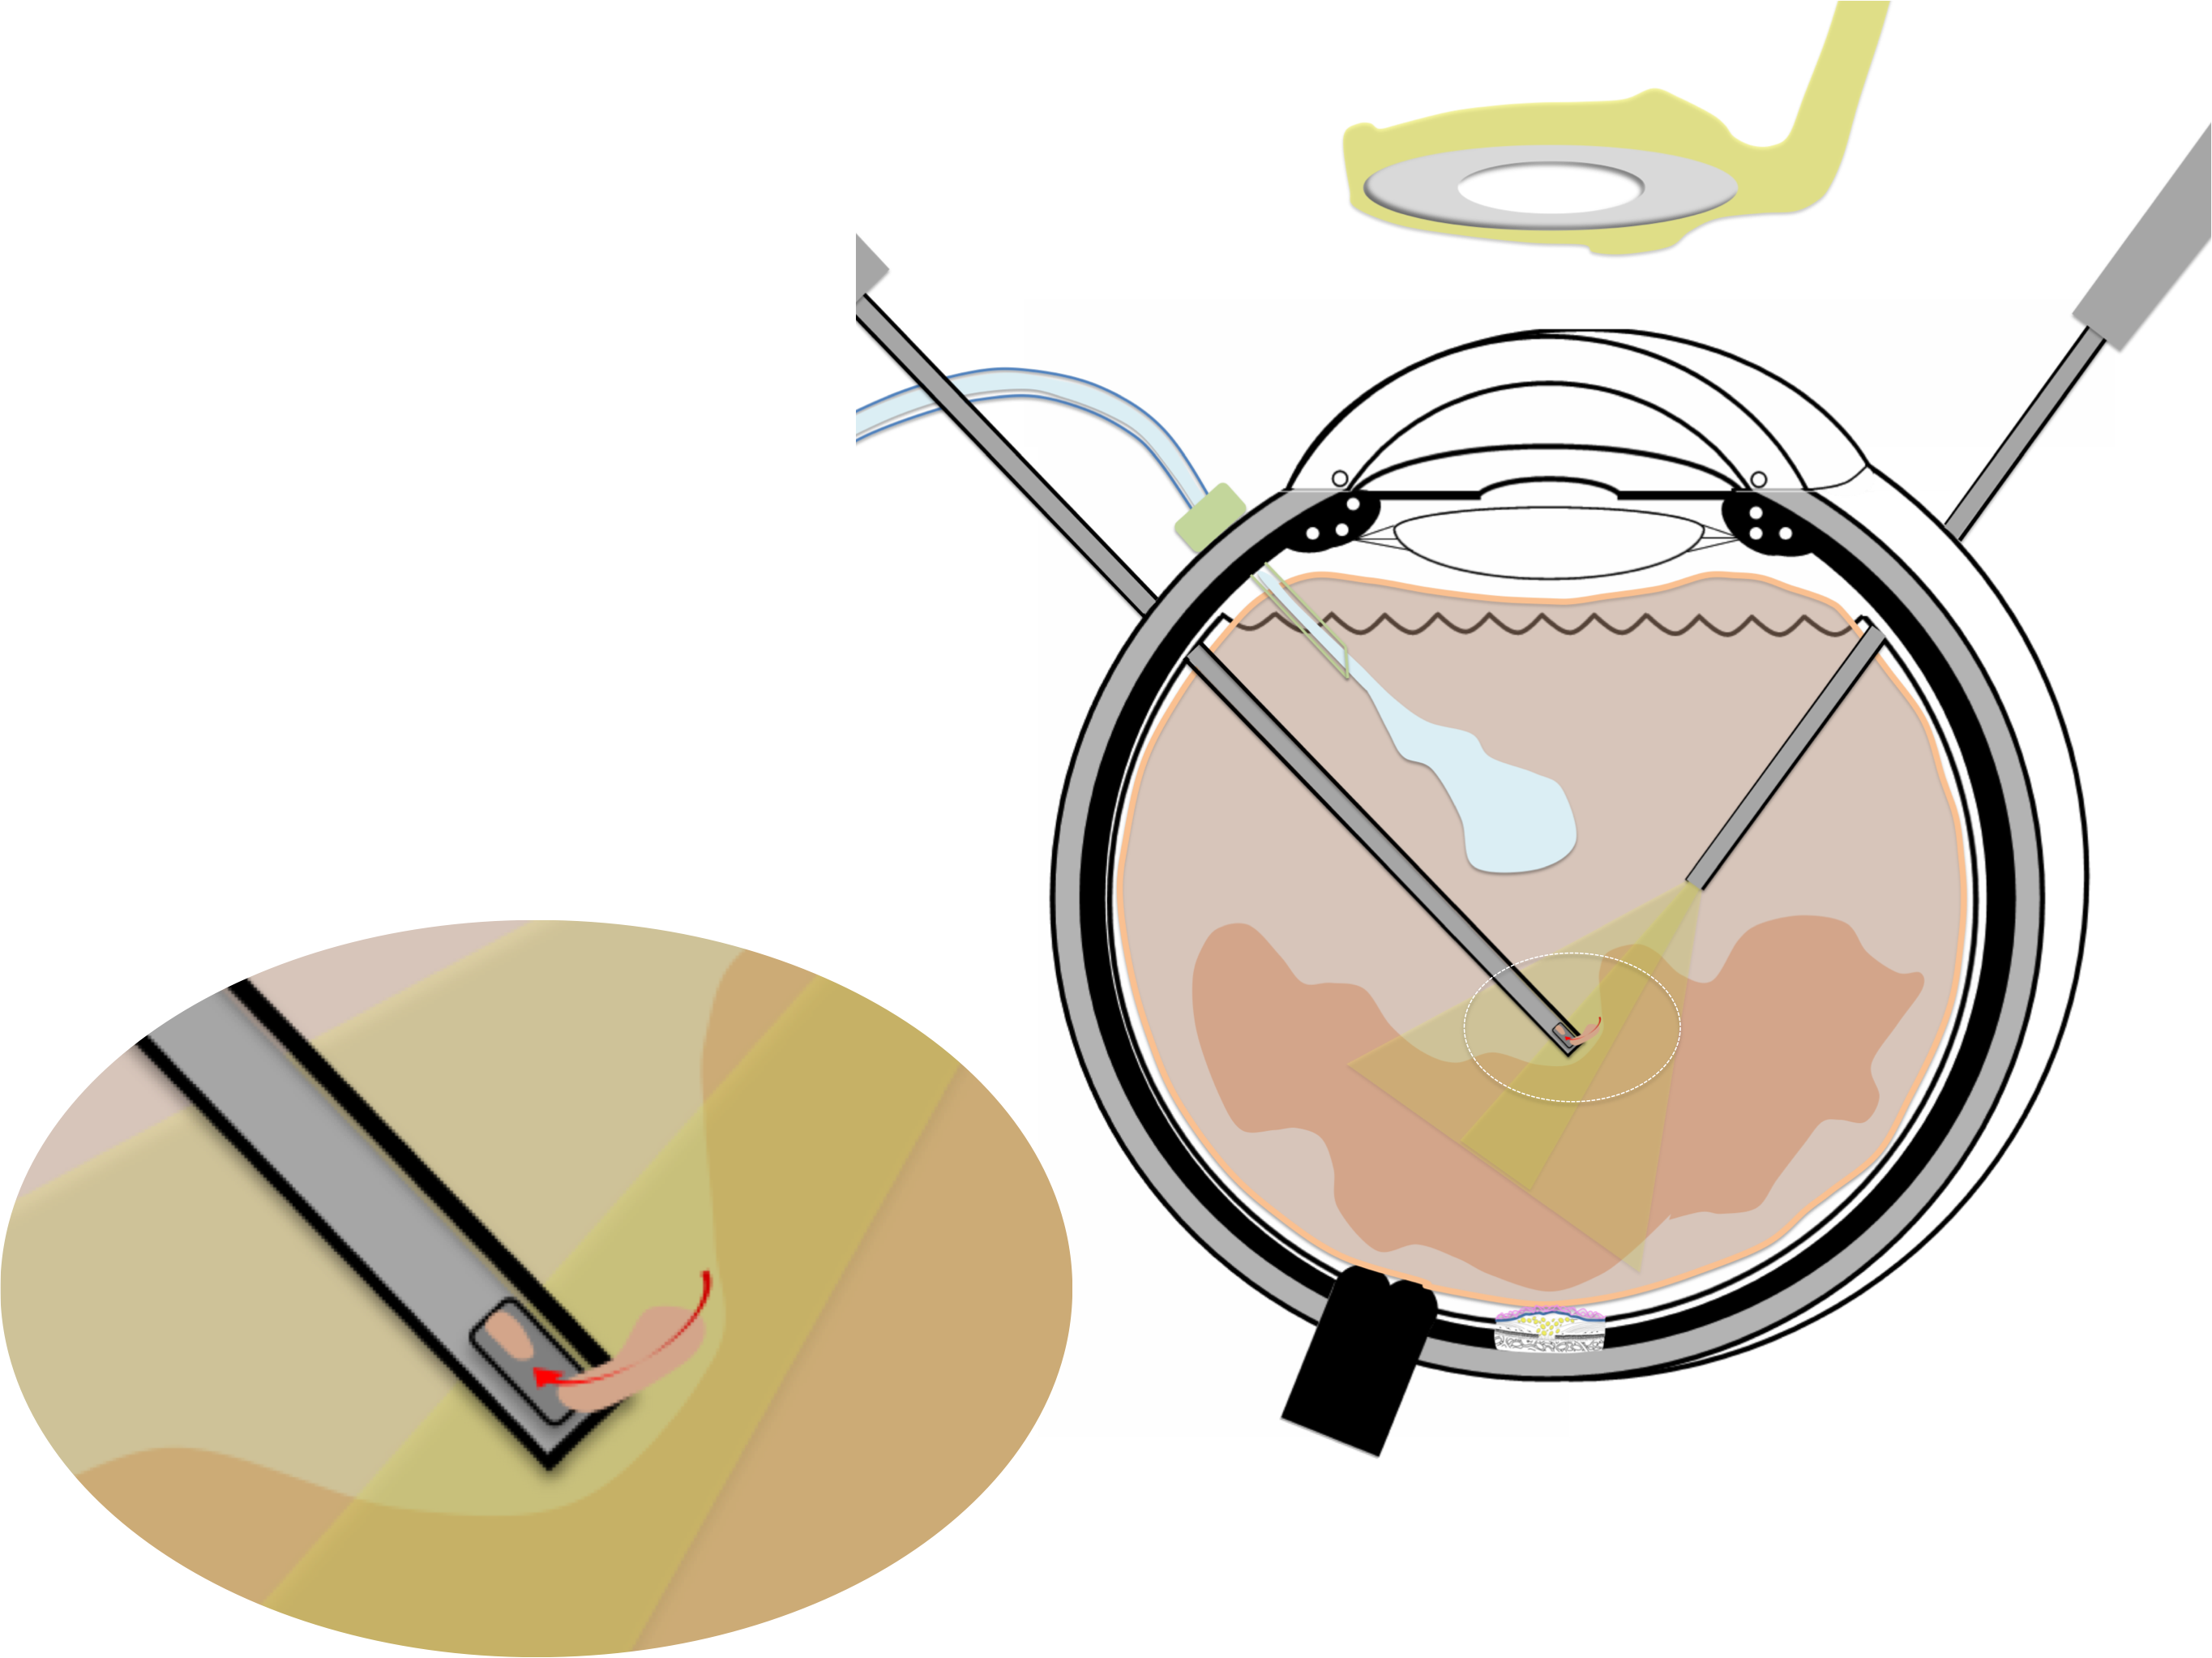 membrane épirétinienne prise en charge chirurgicale par vitrectomie : résection du gel vitréen qui est sectionné et aspiré